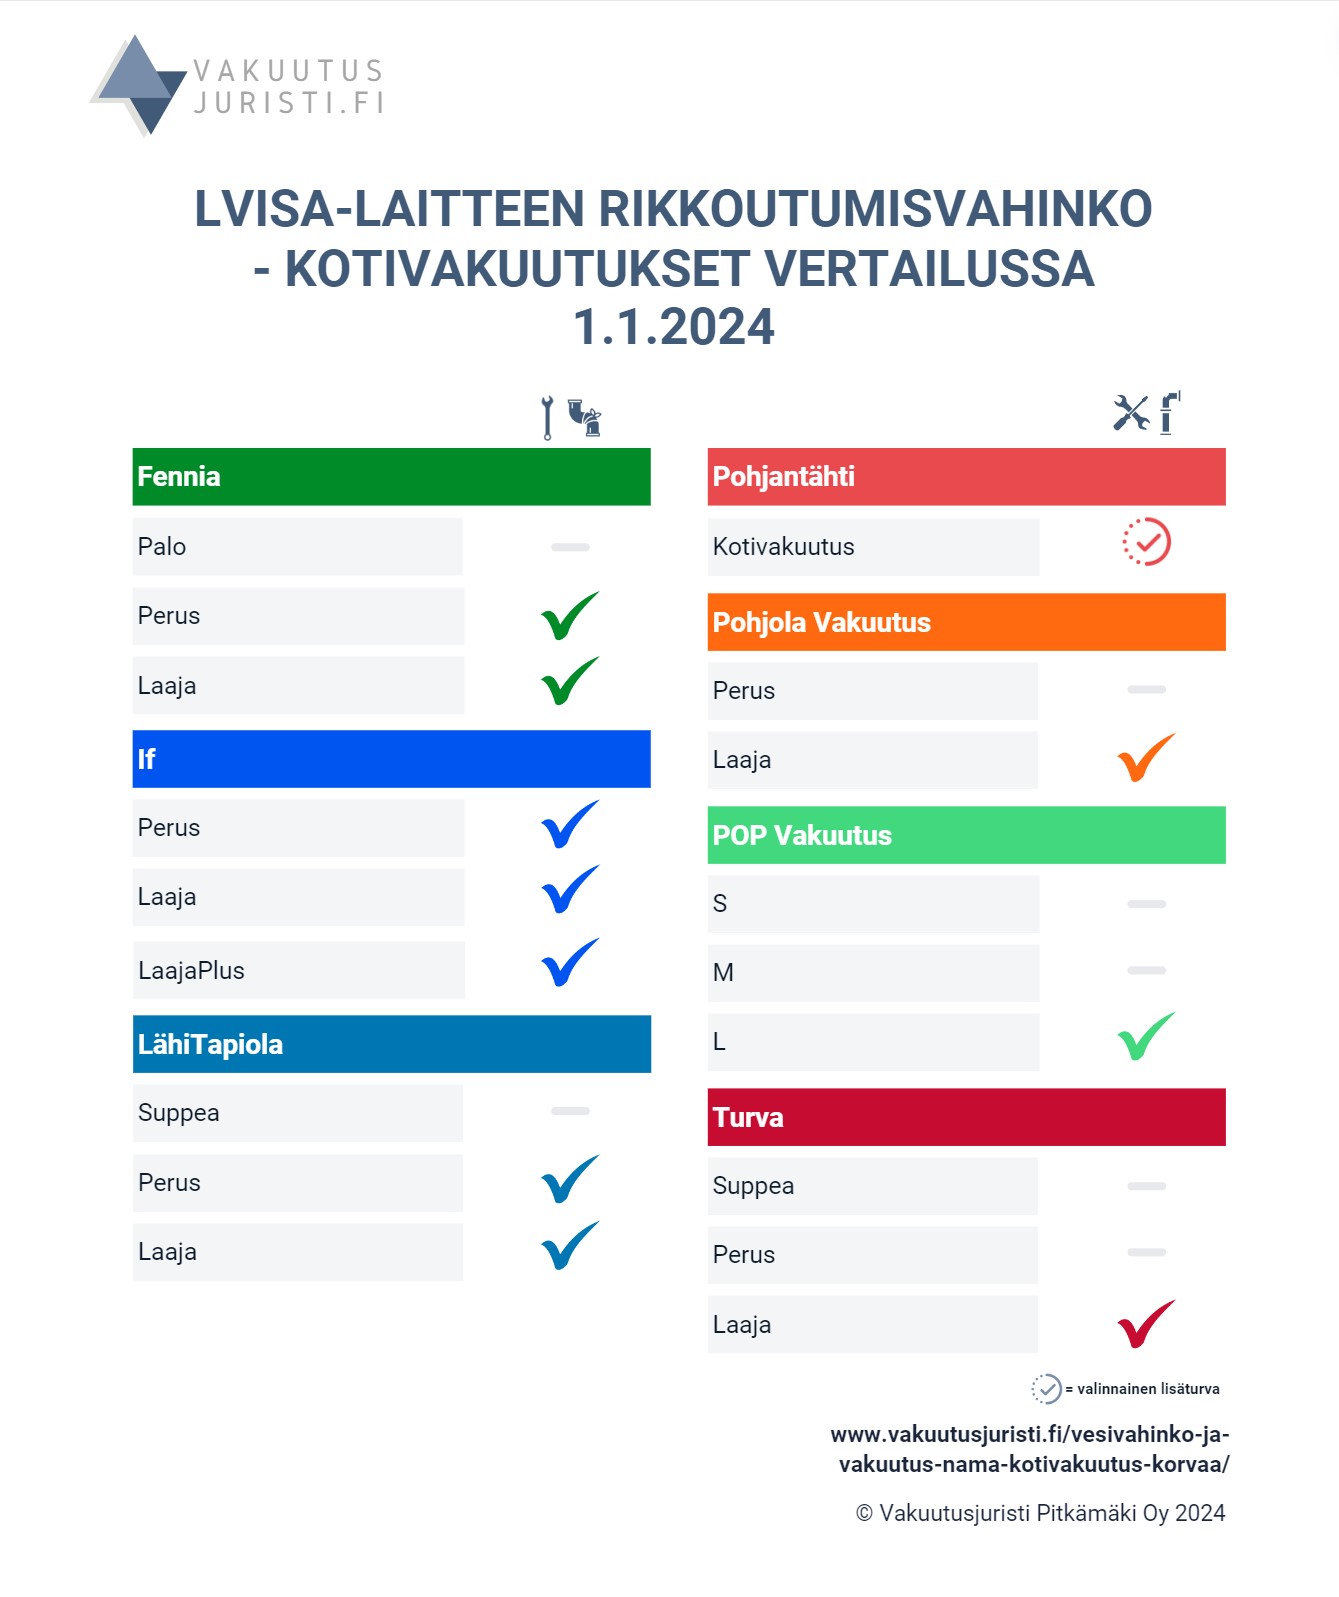 LVISA-laitteen vahingon korvattavuus. Fennian, Ifin, LähiTapiolan, Pohjantähden, Pohjola Vakuutuksen, POP Vakuutuksen ja Turvan kotivakuutukset vertailussa 1.1.2024